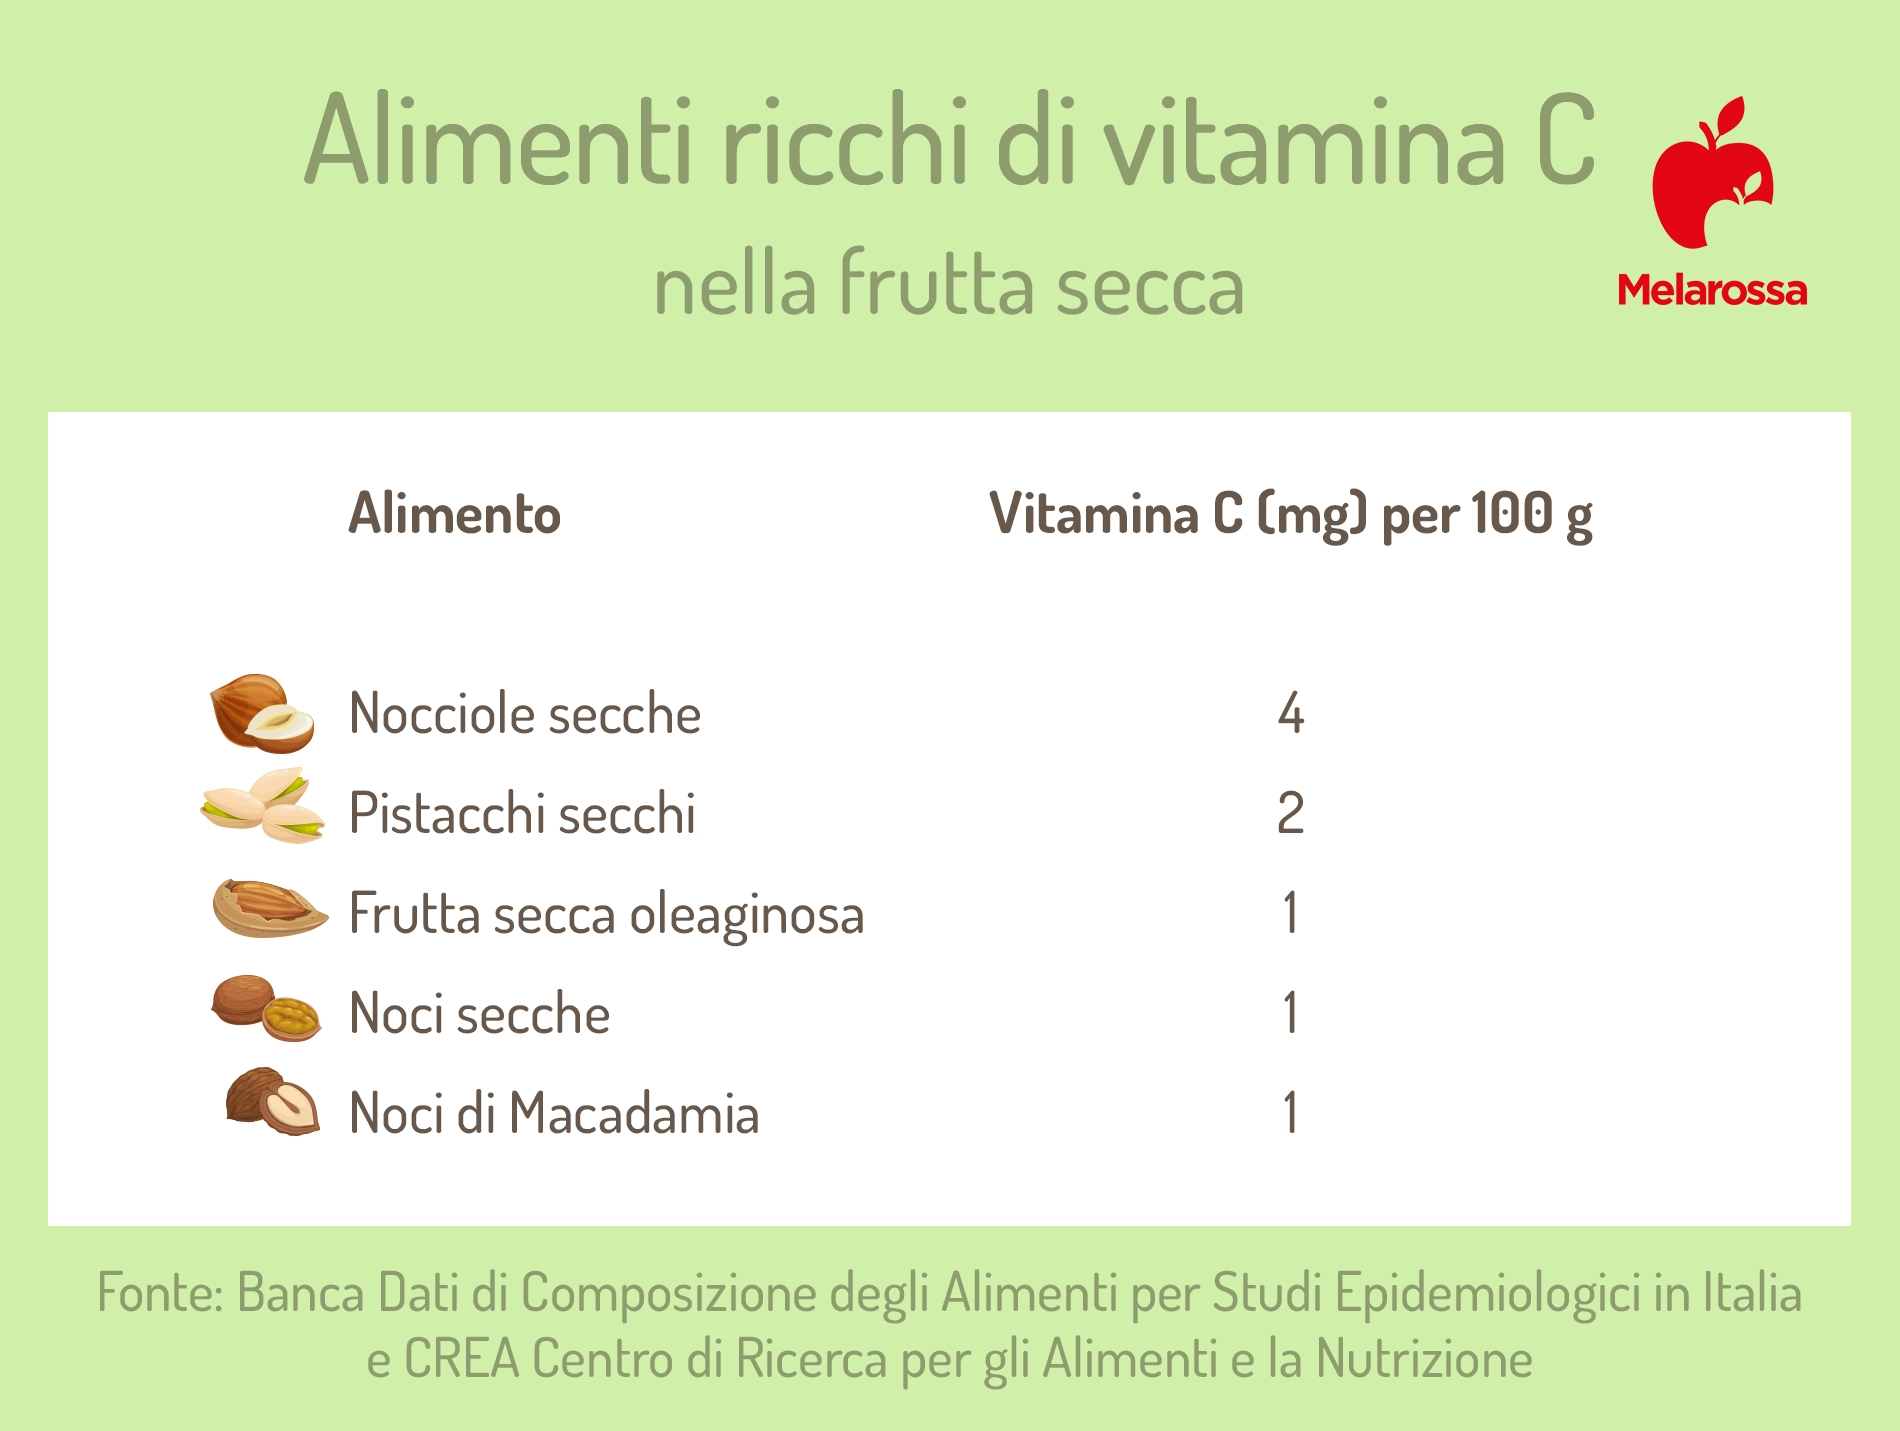 alimenti ricchi di vitamina C nella frutta secca